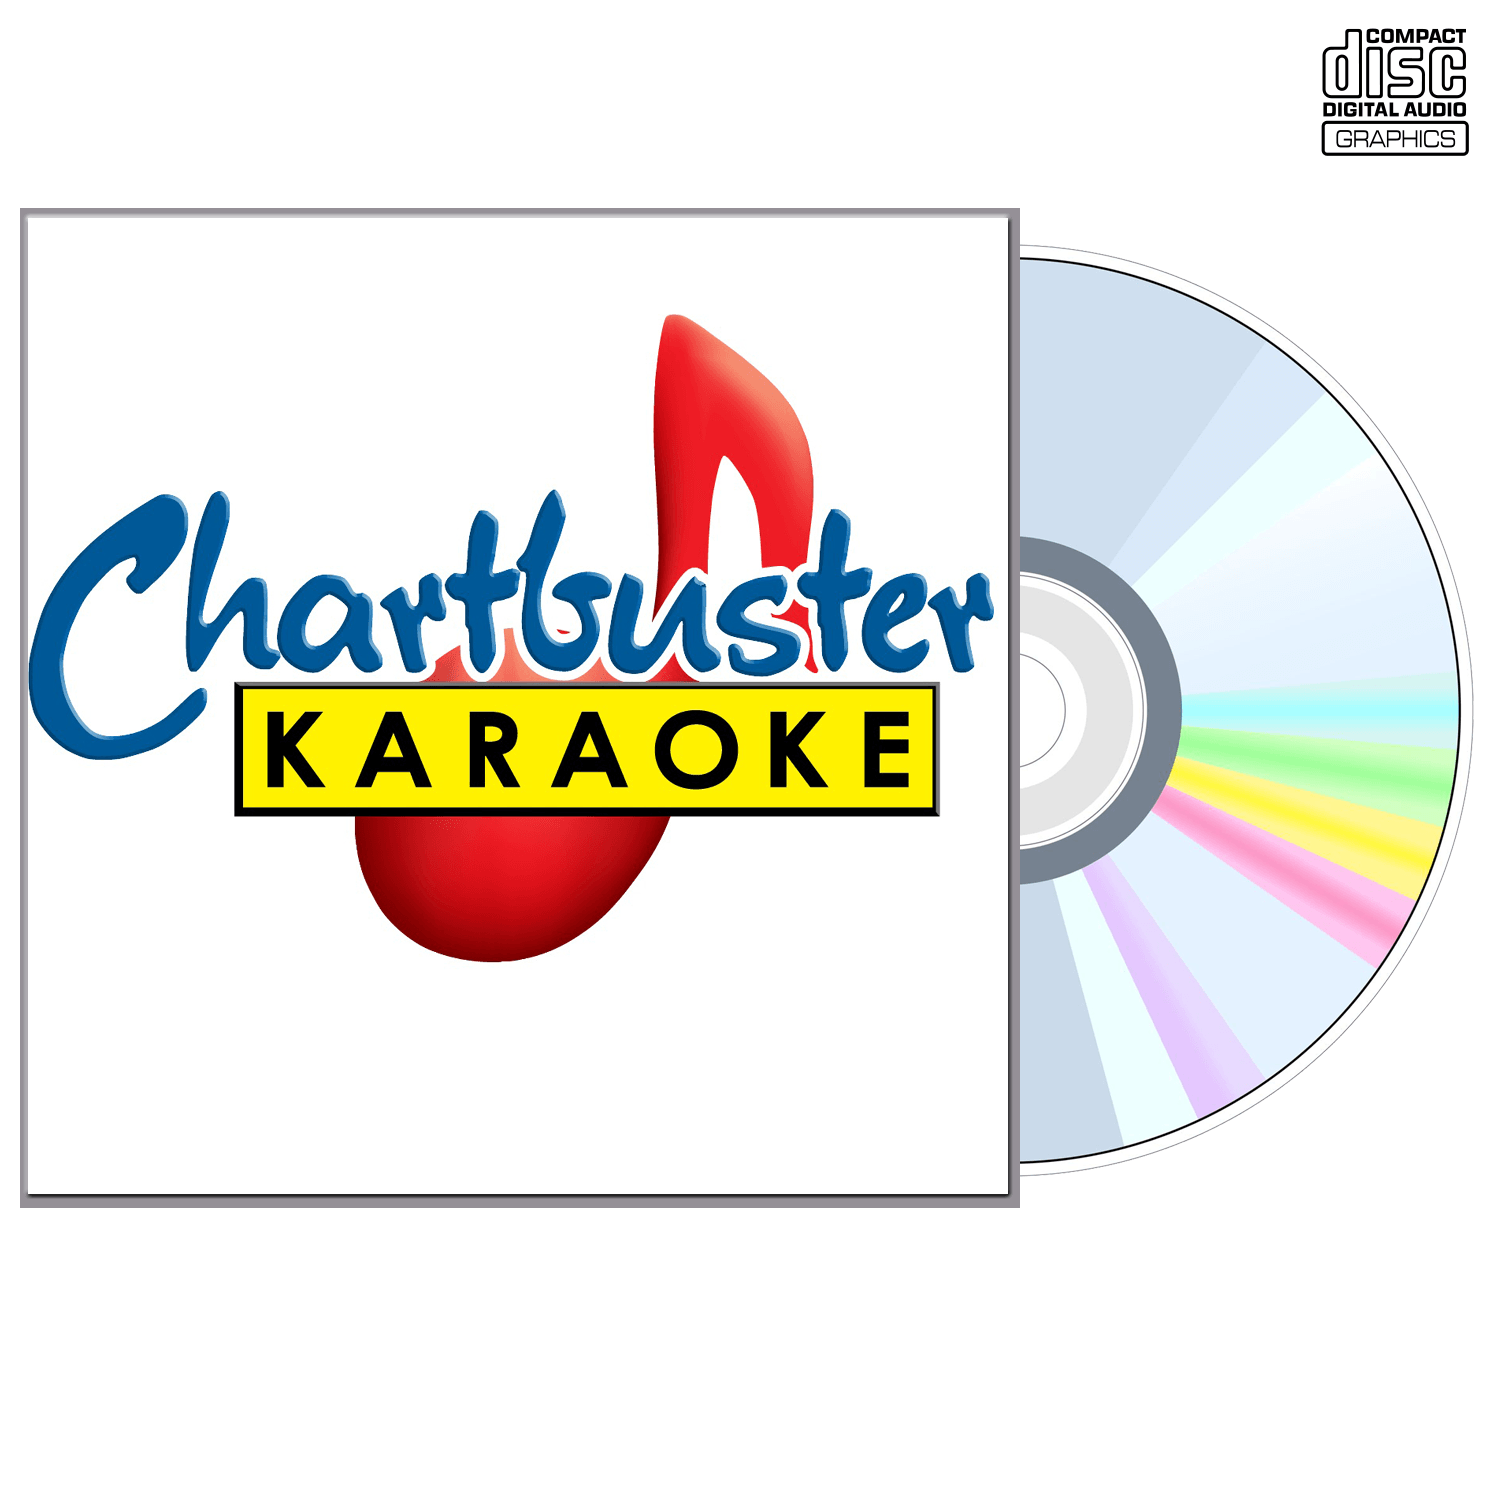 Rihanna Vol 2 - CD+G - Chartbuster Karaoke - Karaoke Home Entertainment